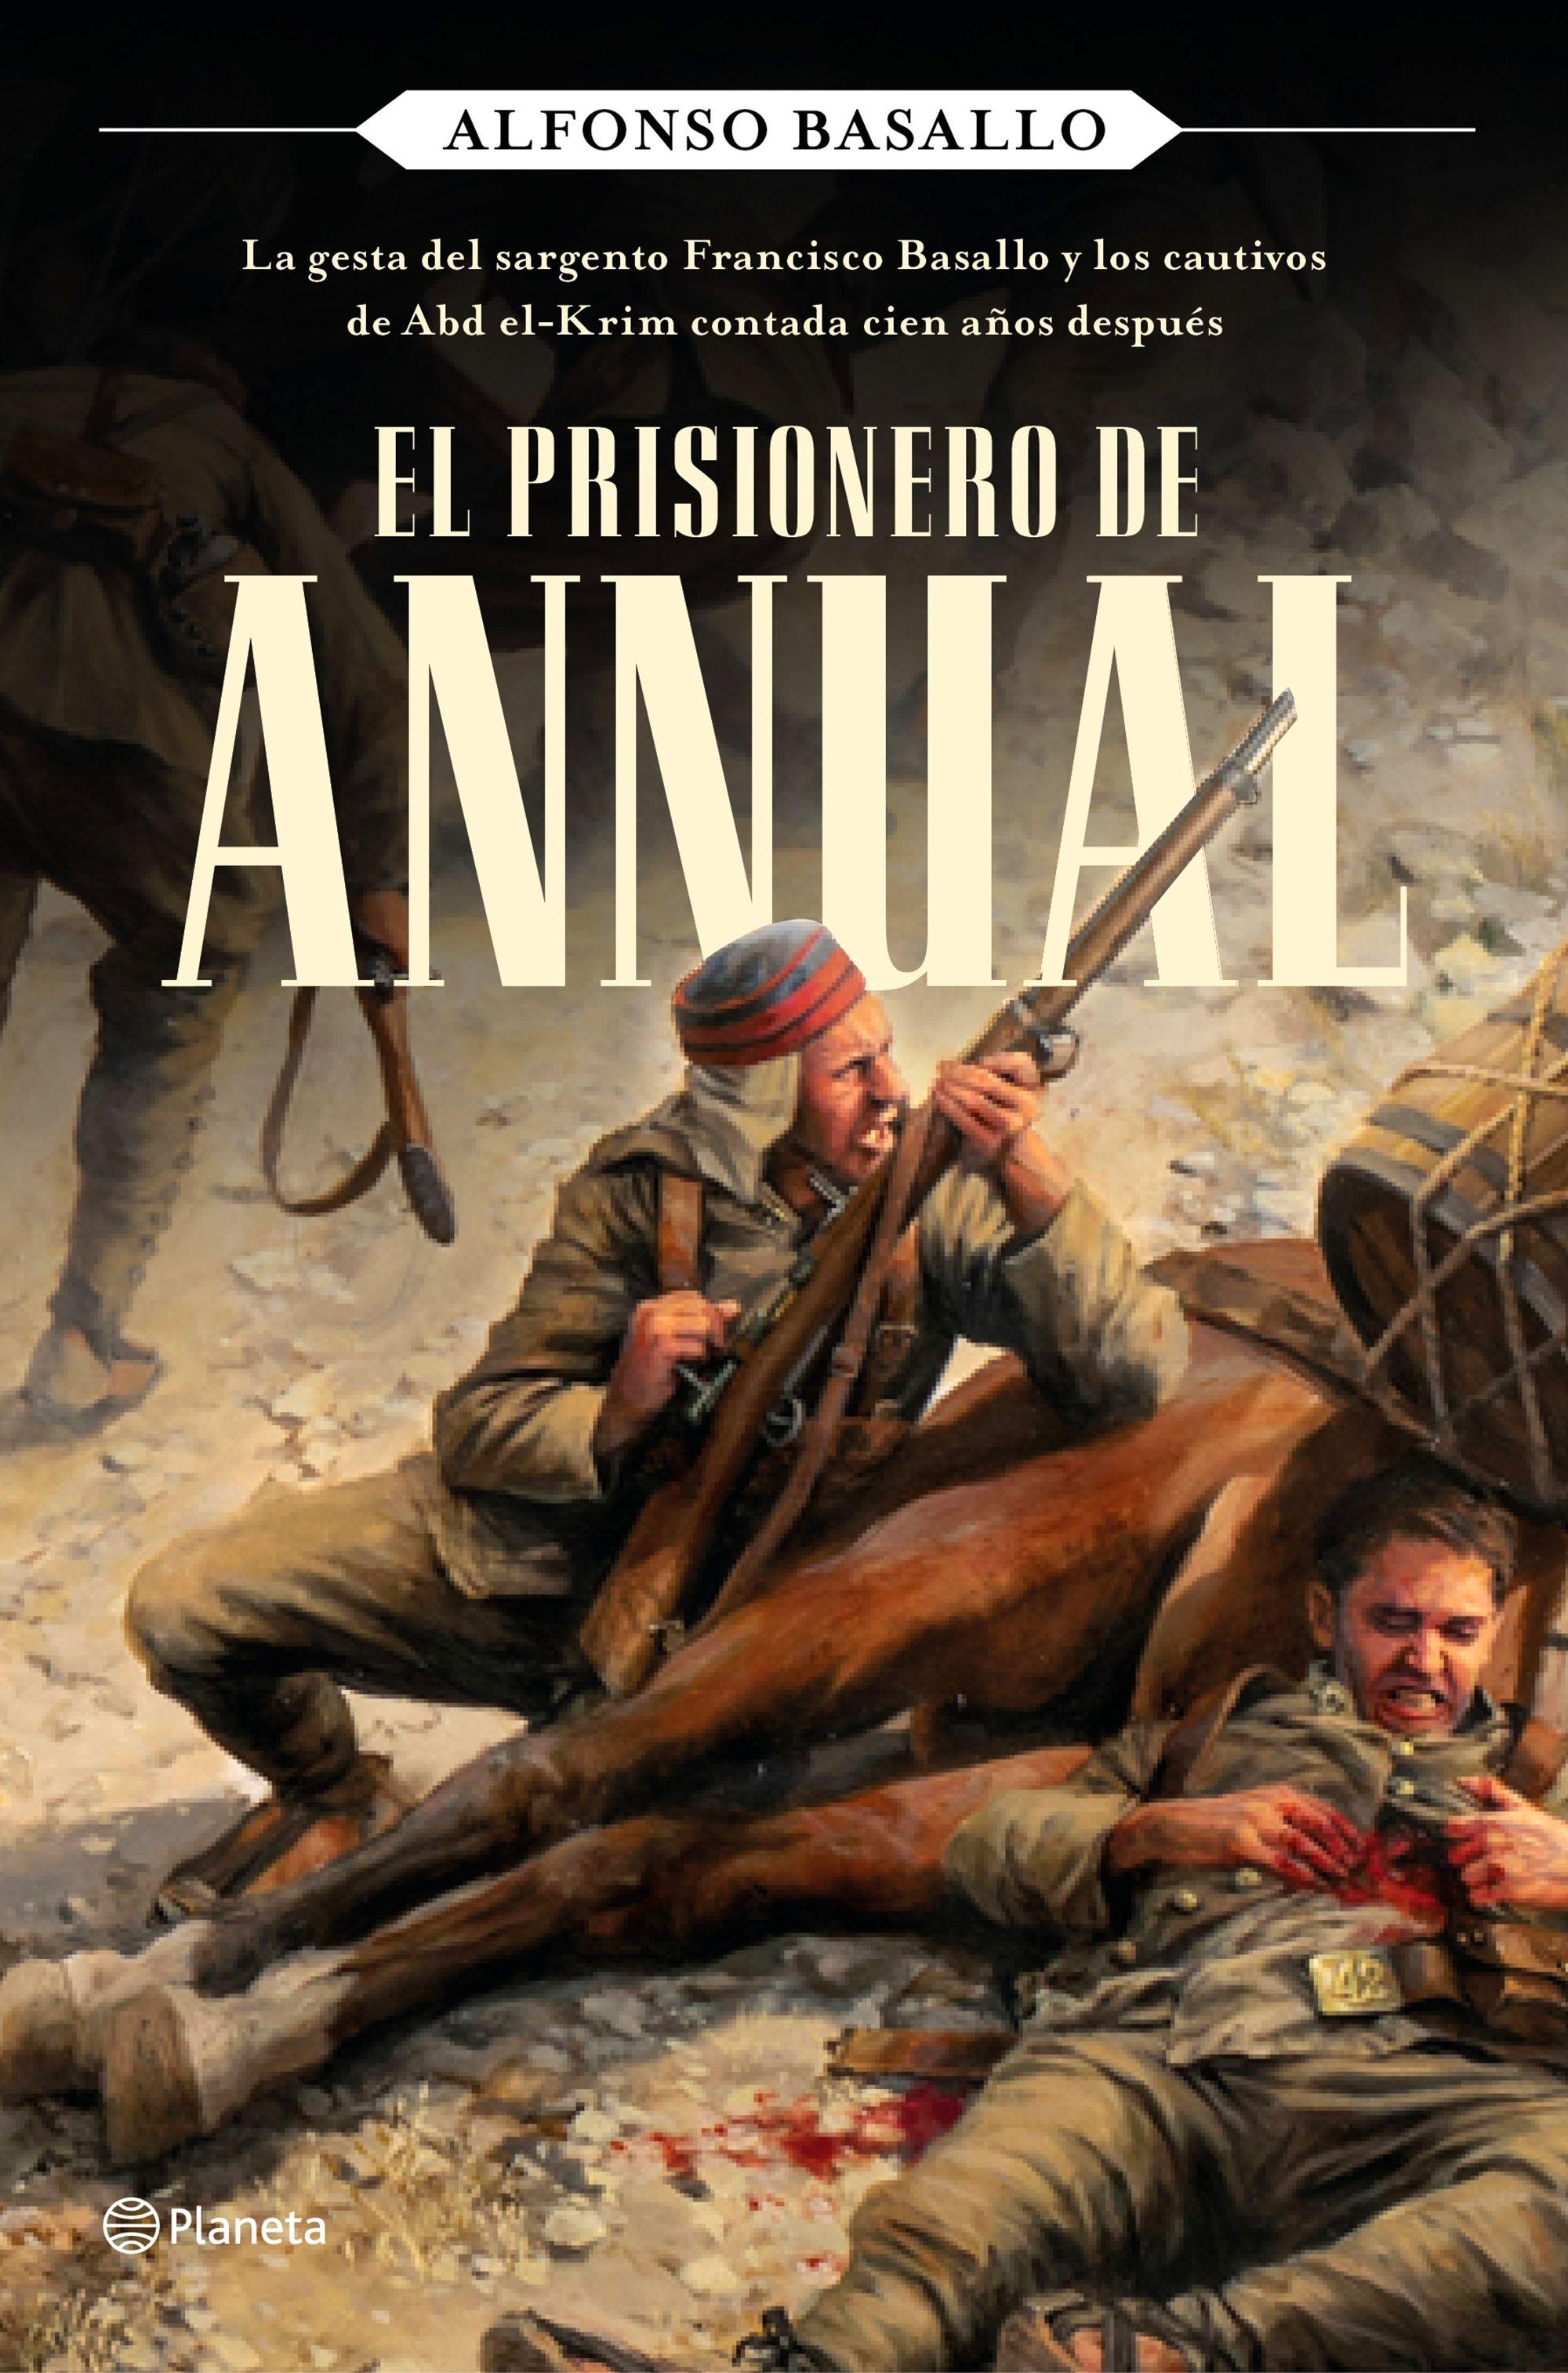 Prisionero de Annual, El "La gesta del sargento Francisco Basallo y los cautivos de Abd el-Krim co"